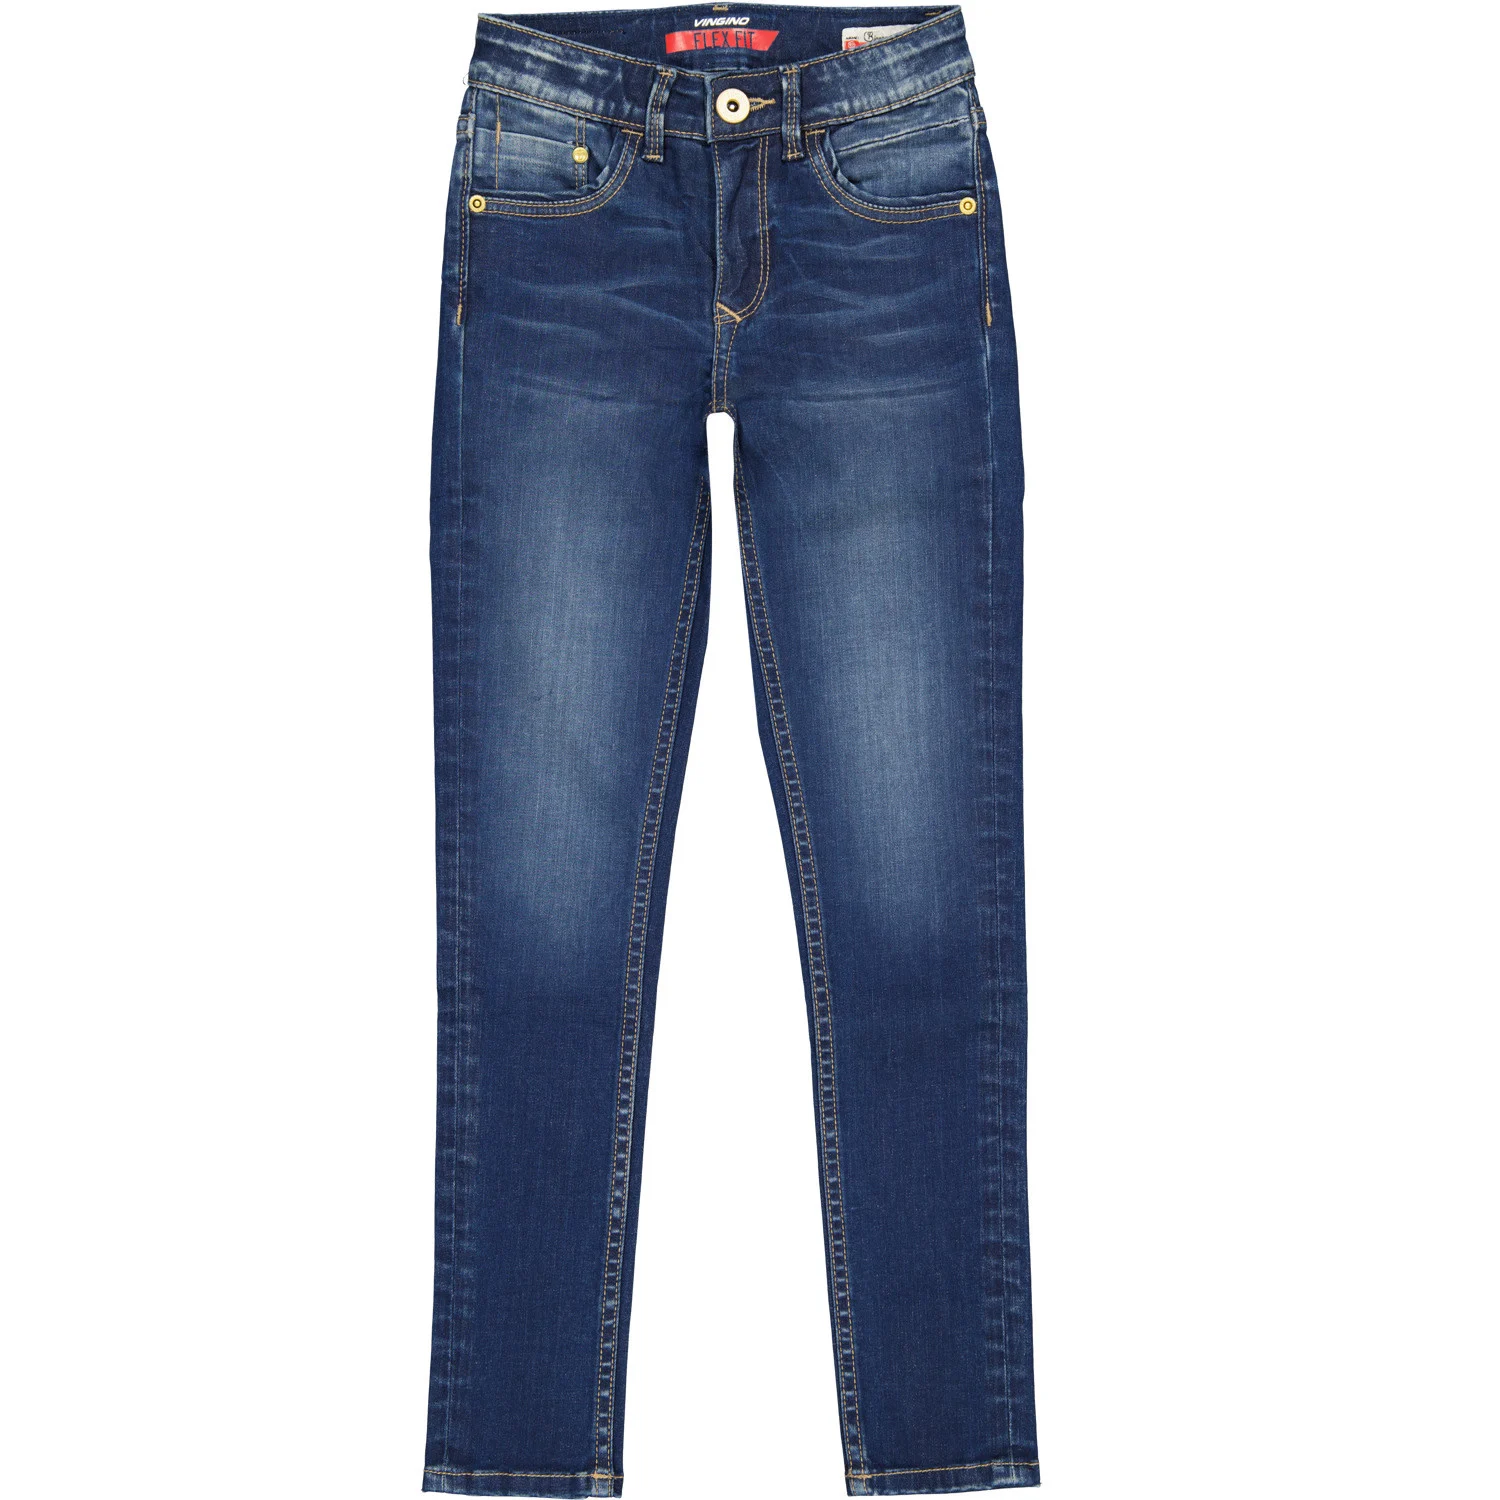 Afbeelding van Vingino Meiden jeans super skinny flex fit bianca deep dark